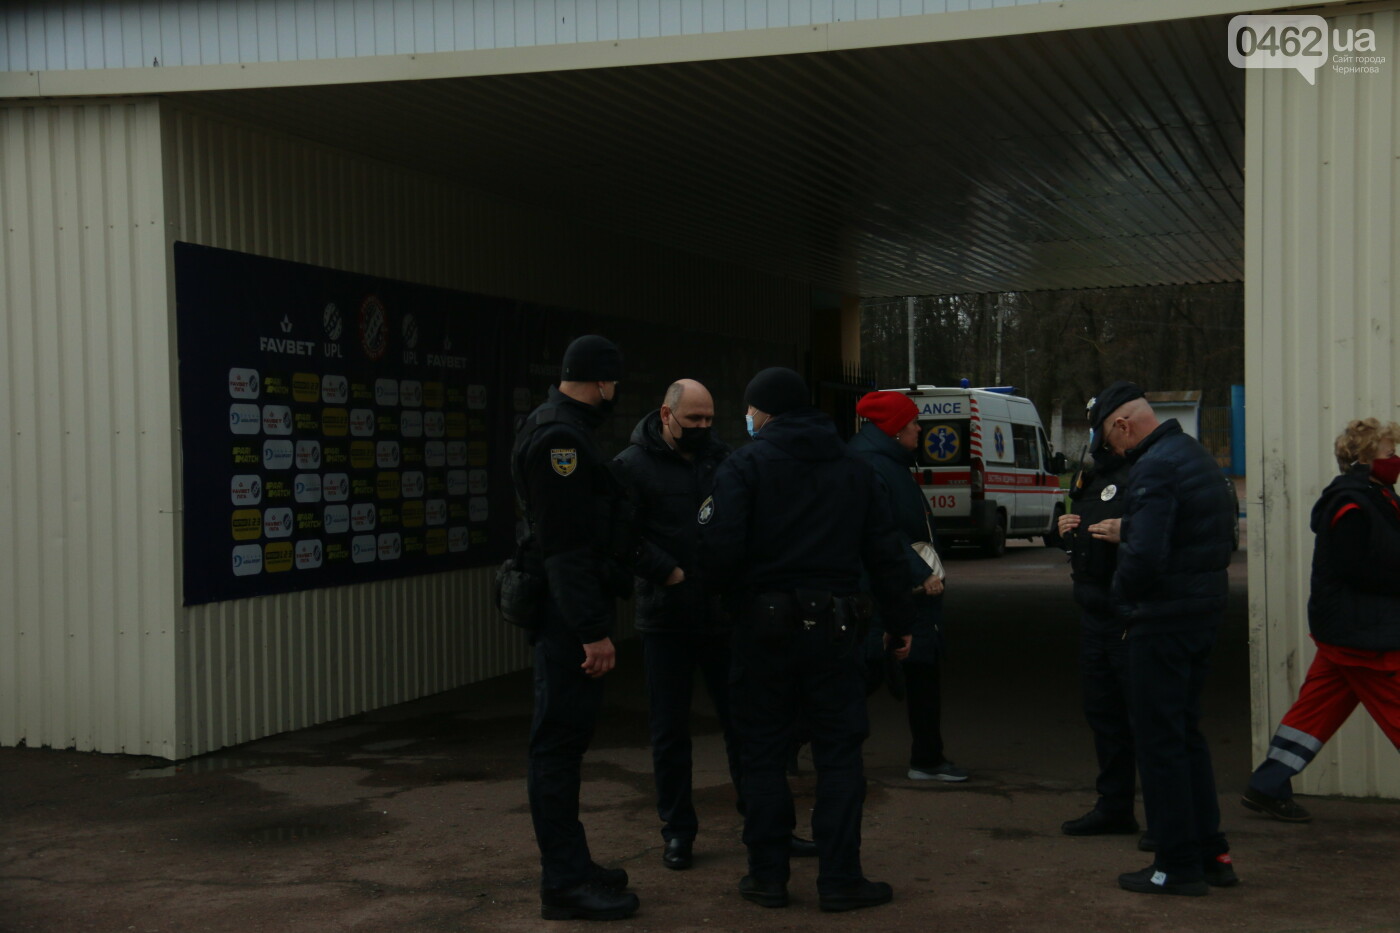 Молодики із символікою ФК "Десна" побили директора чернігівського стадіону. Його забрала швидка